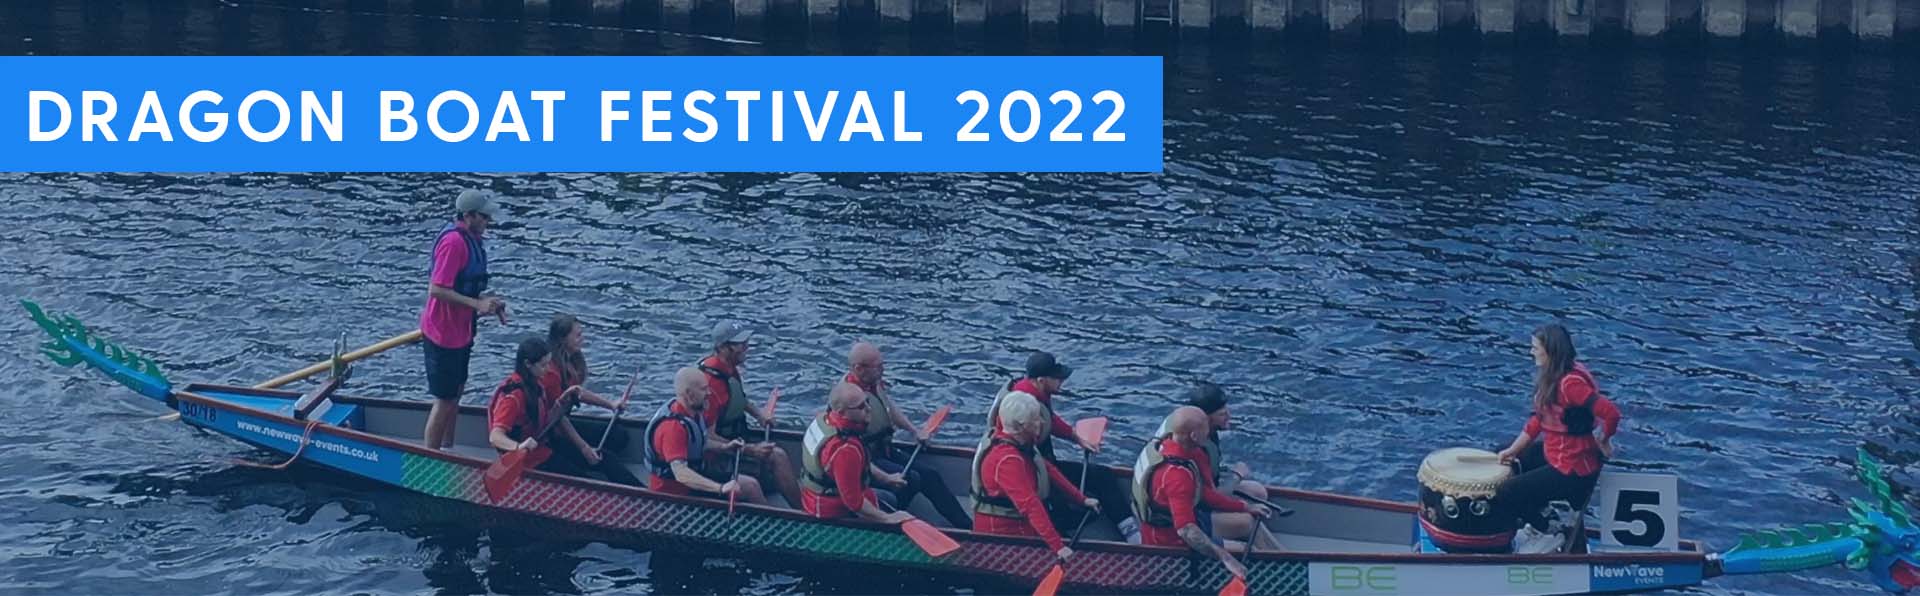 Newark Dragonboat Festival 2022 